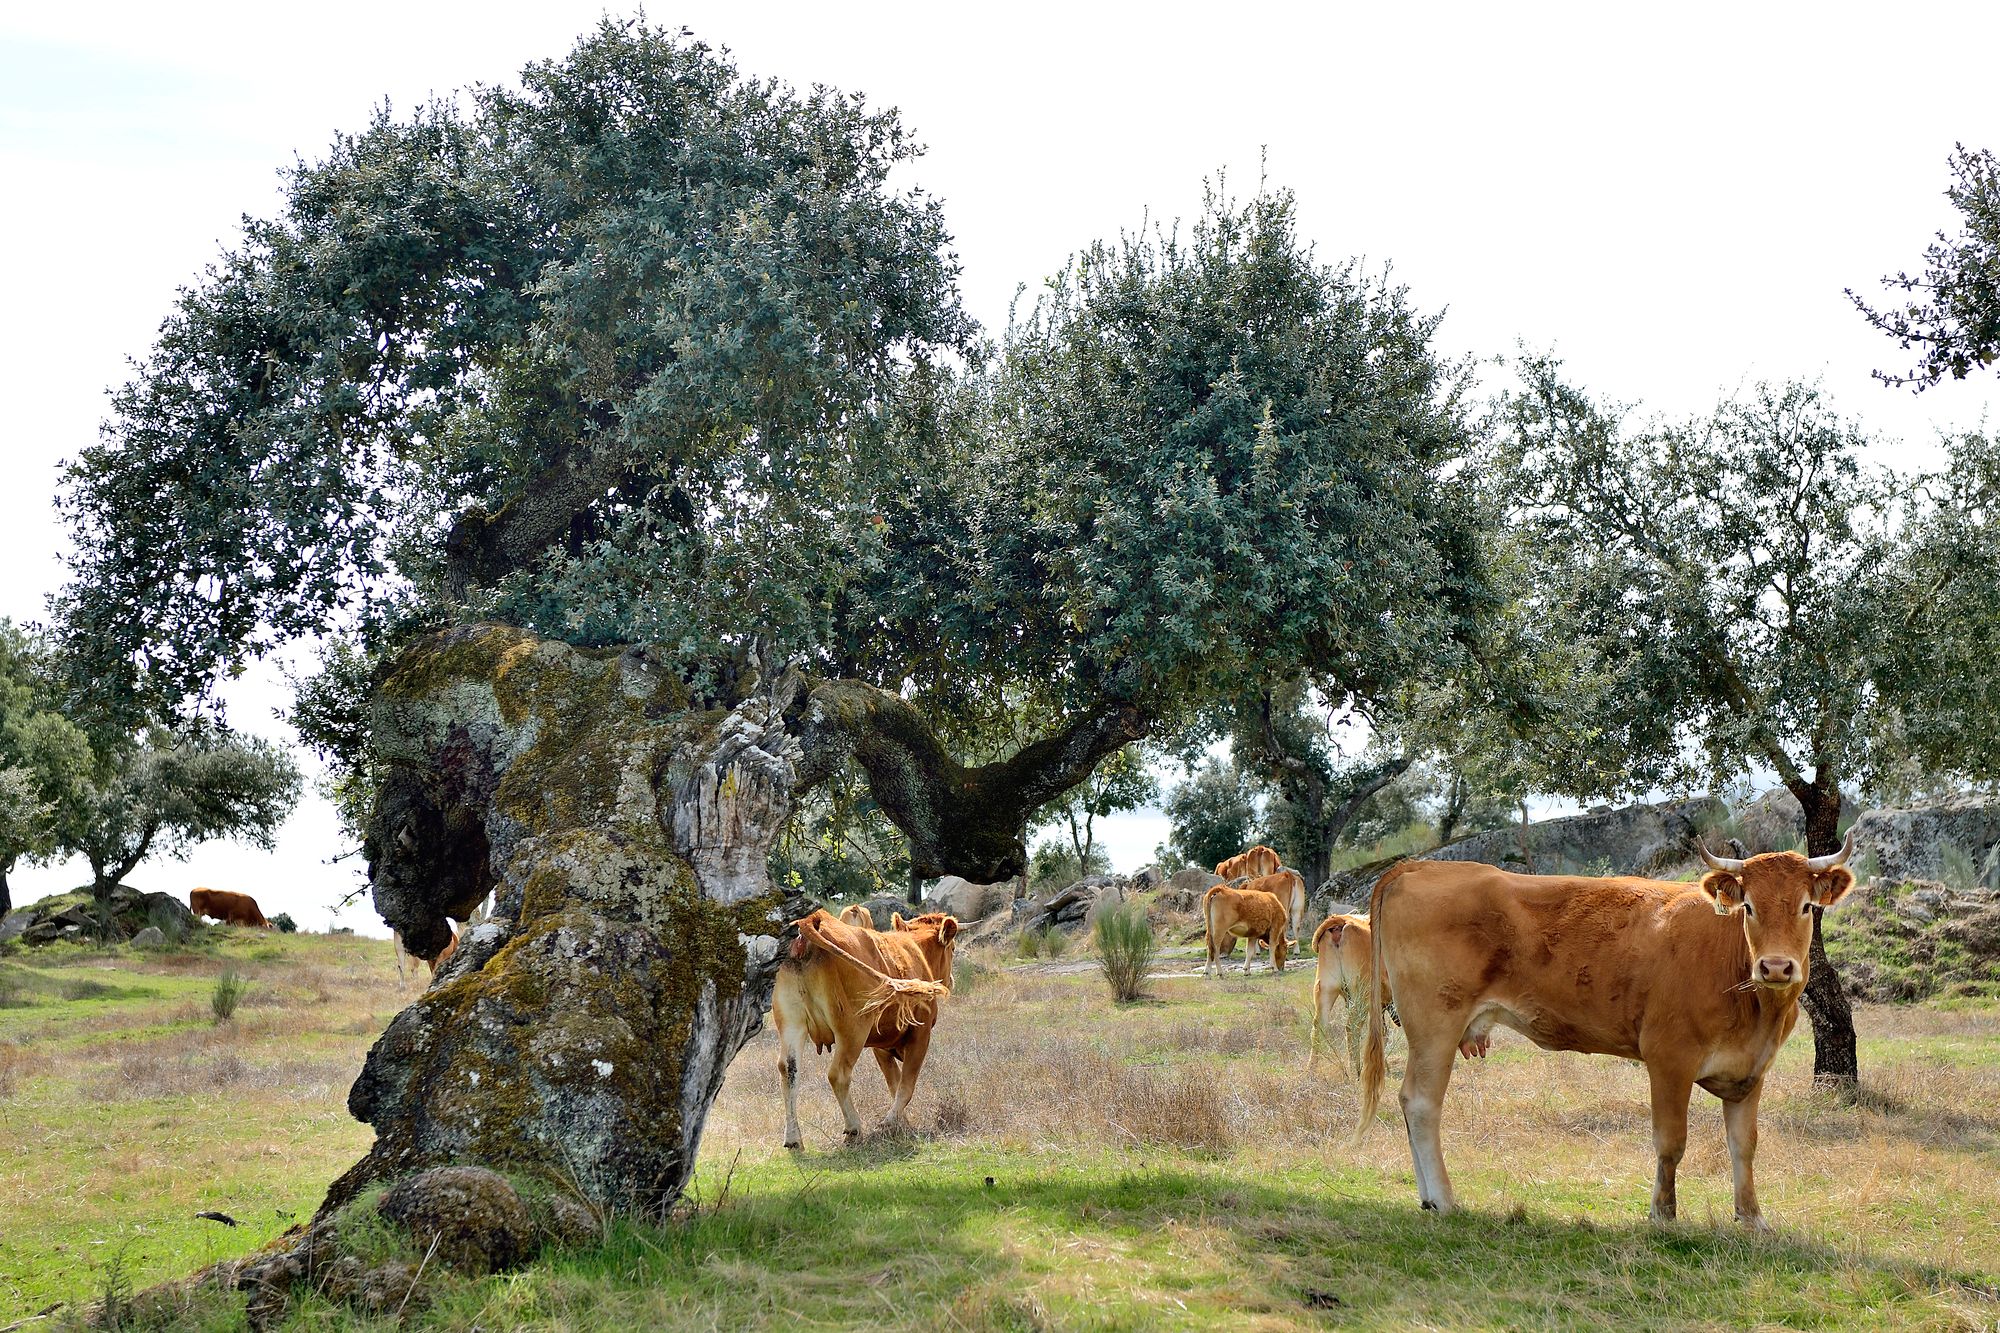 Alentejo on rehtiä maaseutua, jossa lehmät laiduntavat oliivipuiden ja korkkitammien seassa. © Pekka Numminen